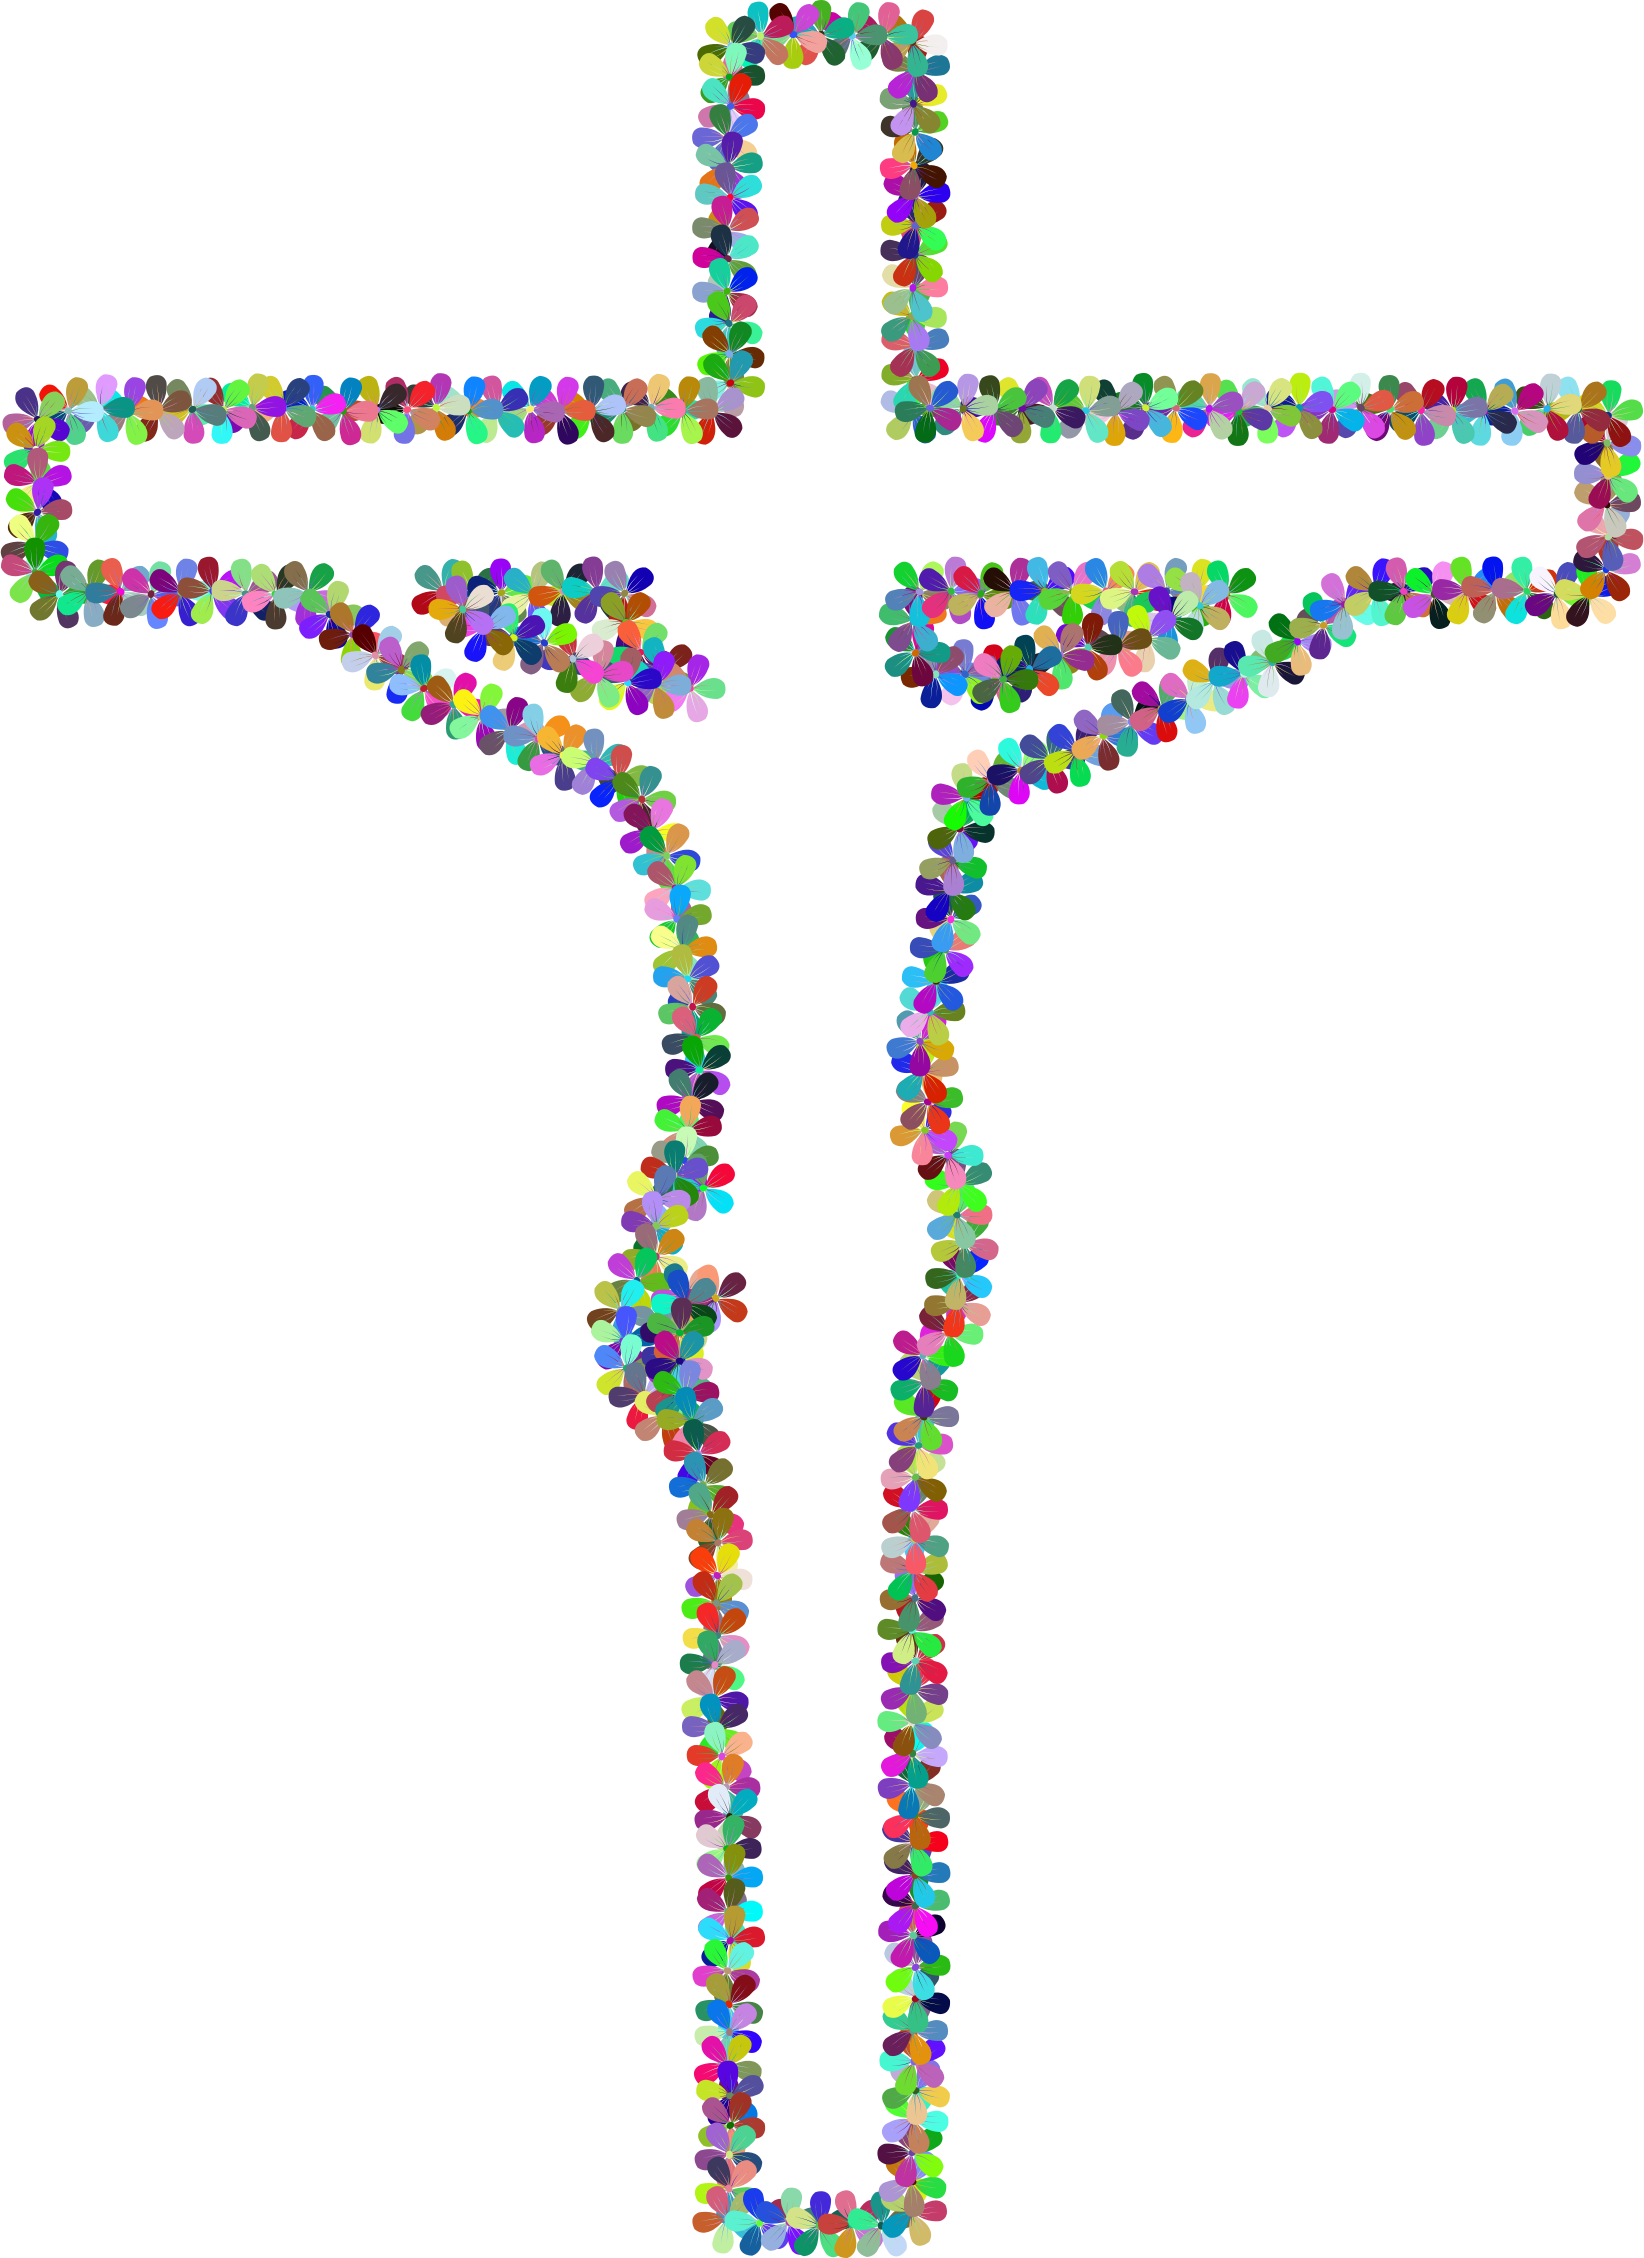 Crucifix clipart decorative cross. Prismatic floral outline big